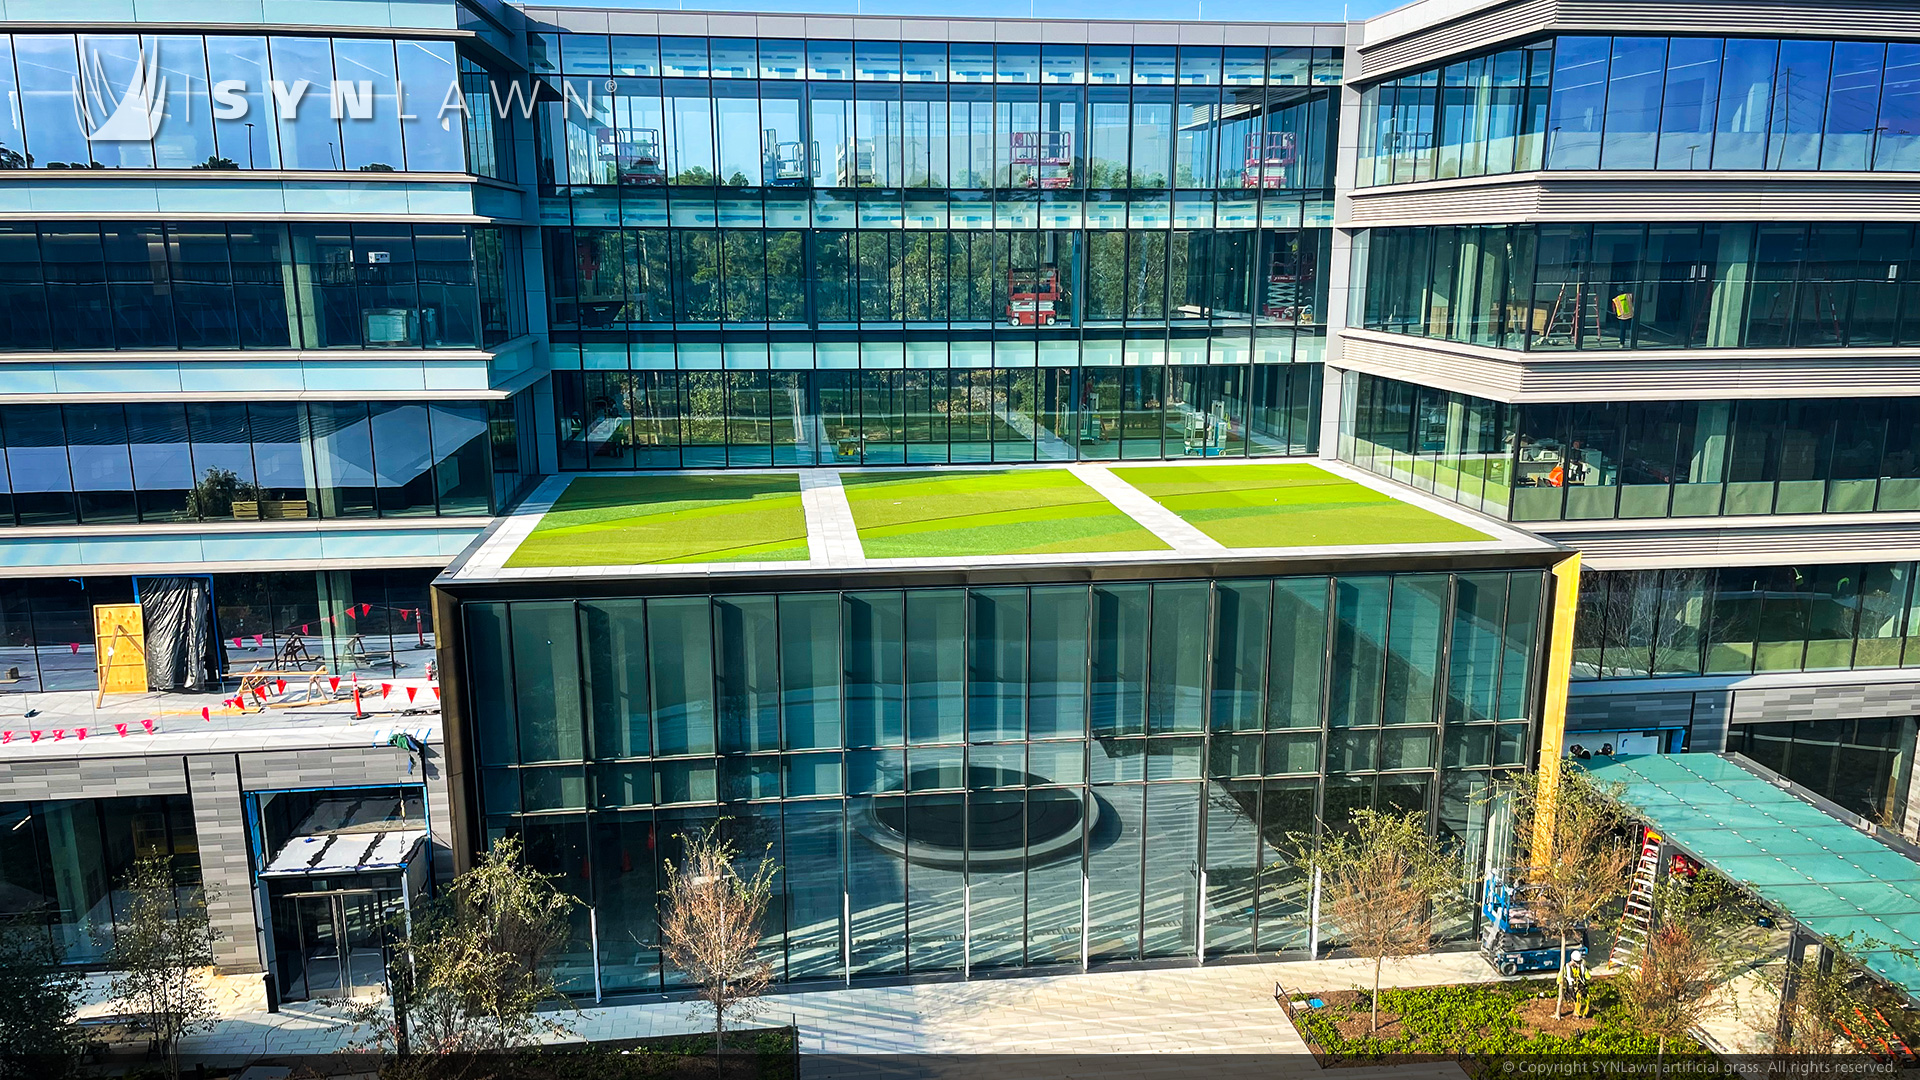 تضيف شركة Hewlett Packard تصميمًا مخصصًا للعشب المرصع إلى حرم جامعة هيوستن